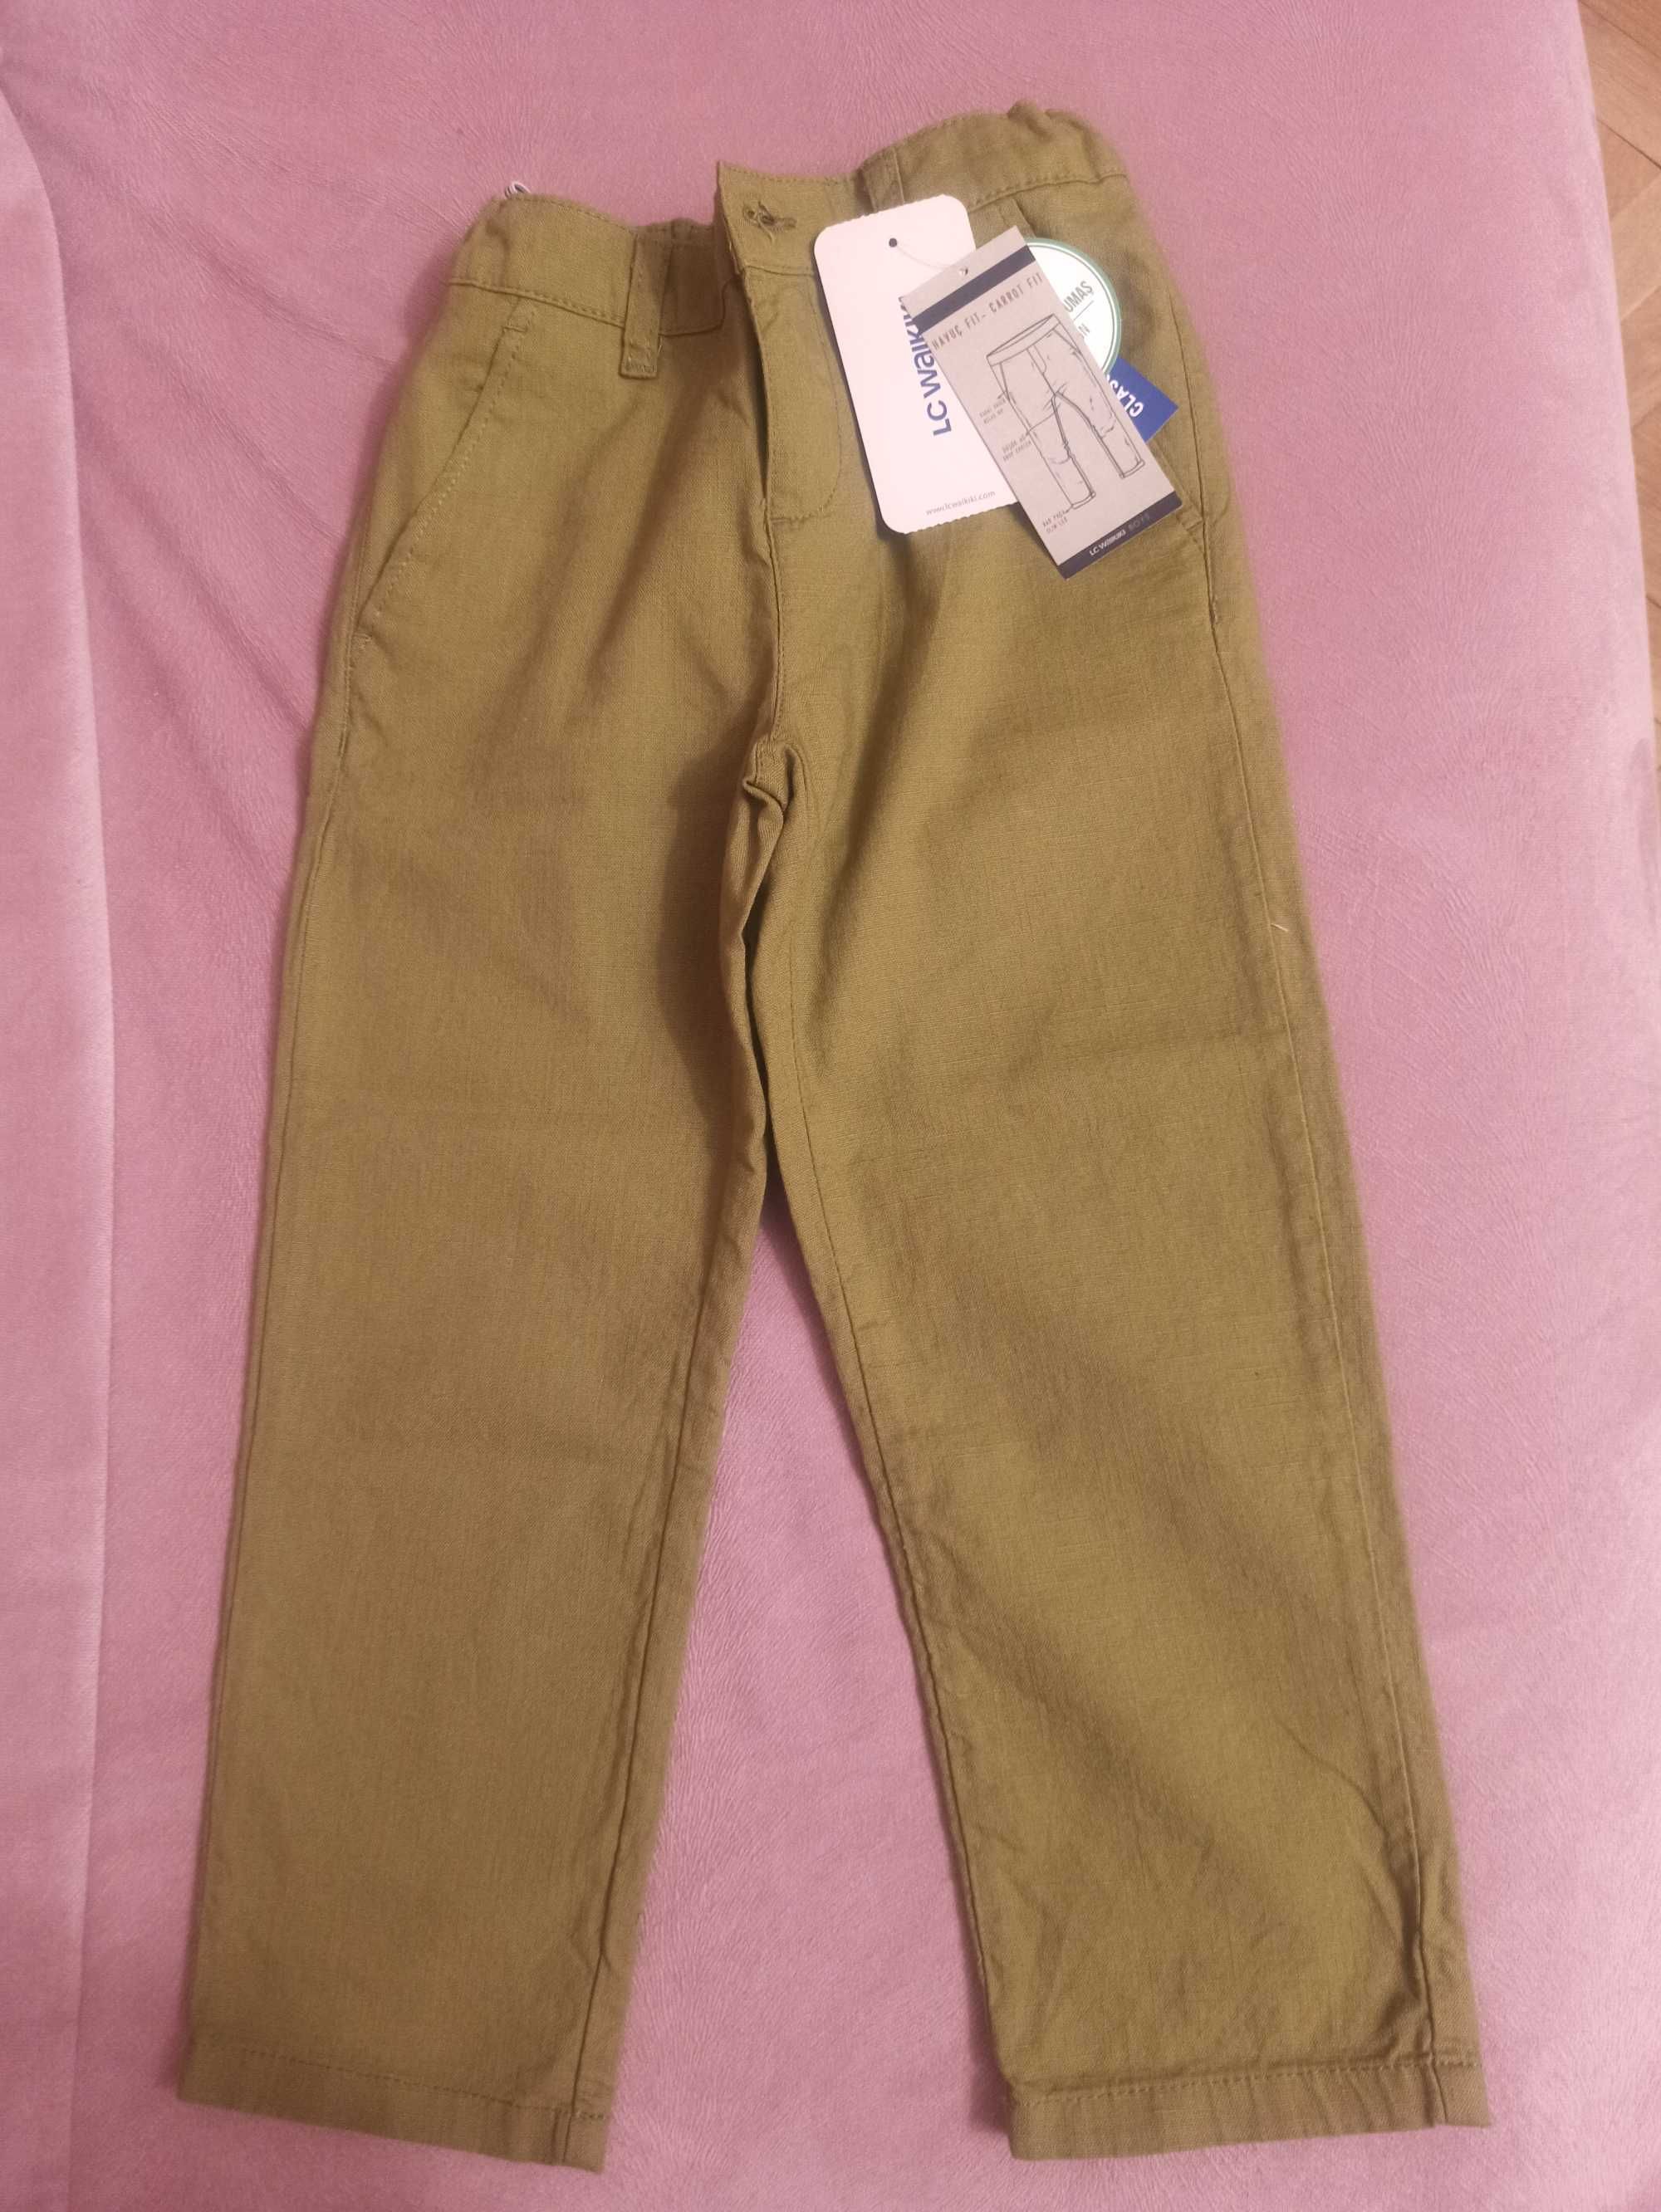 Продавам летни панталони за момчета - 6-7г , размер 116-122см - 2броя